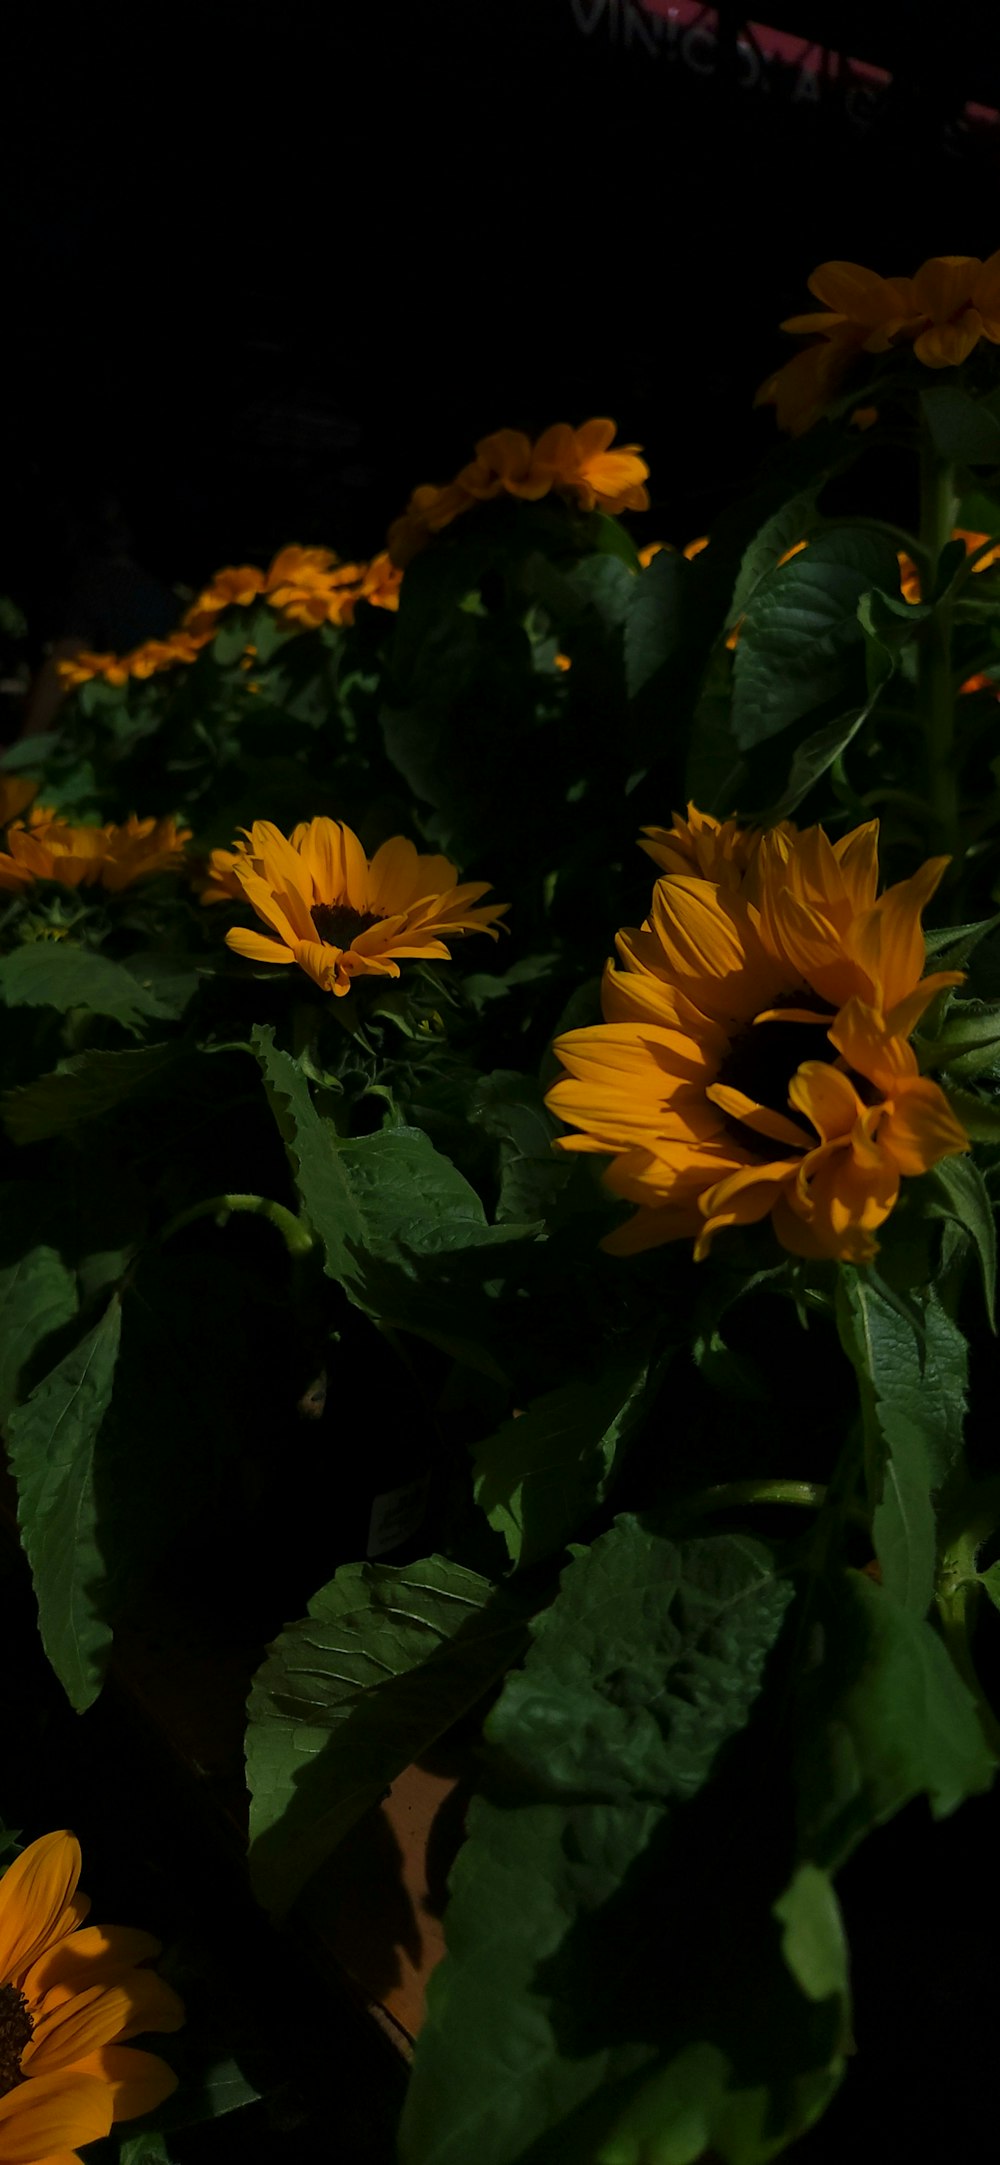 黄色い花のグループ